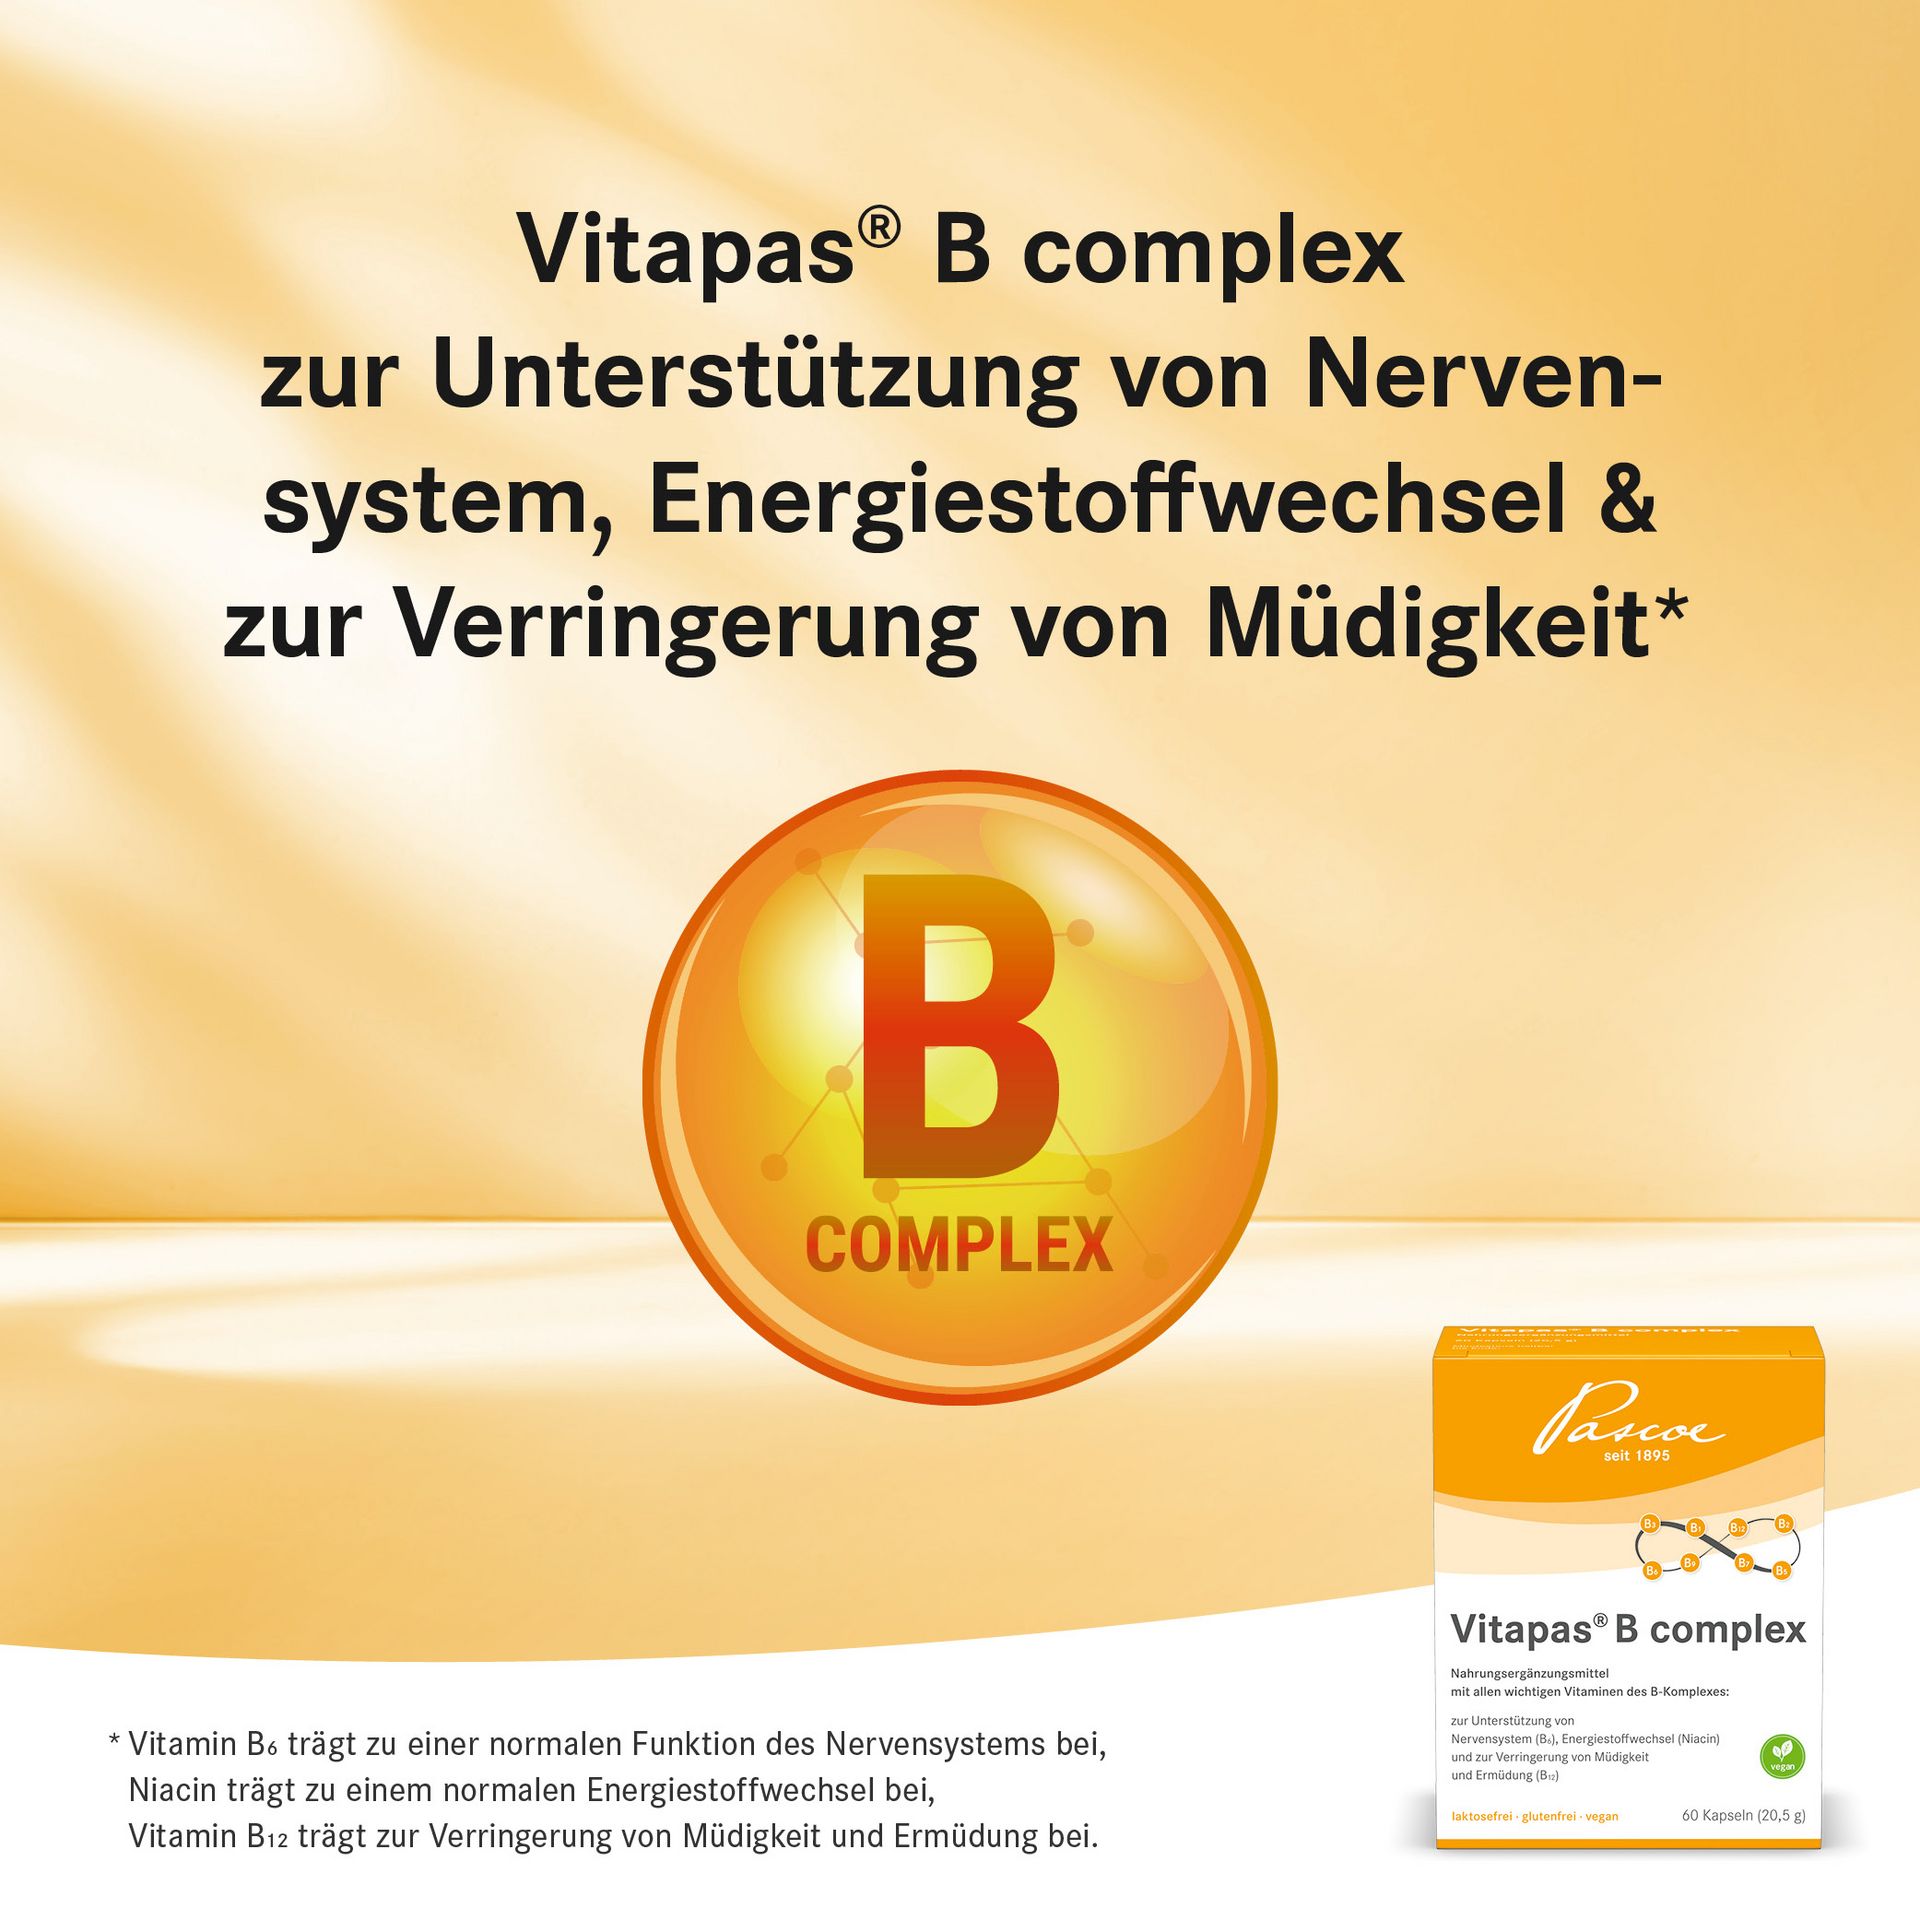 Vitapas B Complex Health Claims